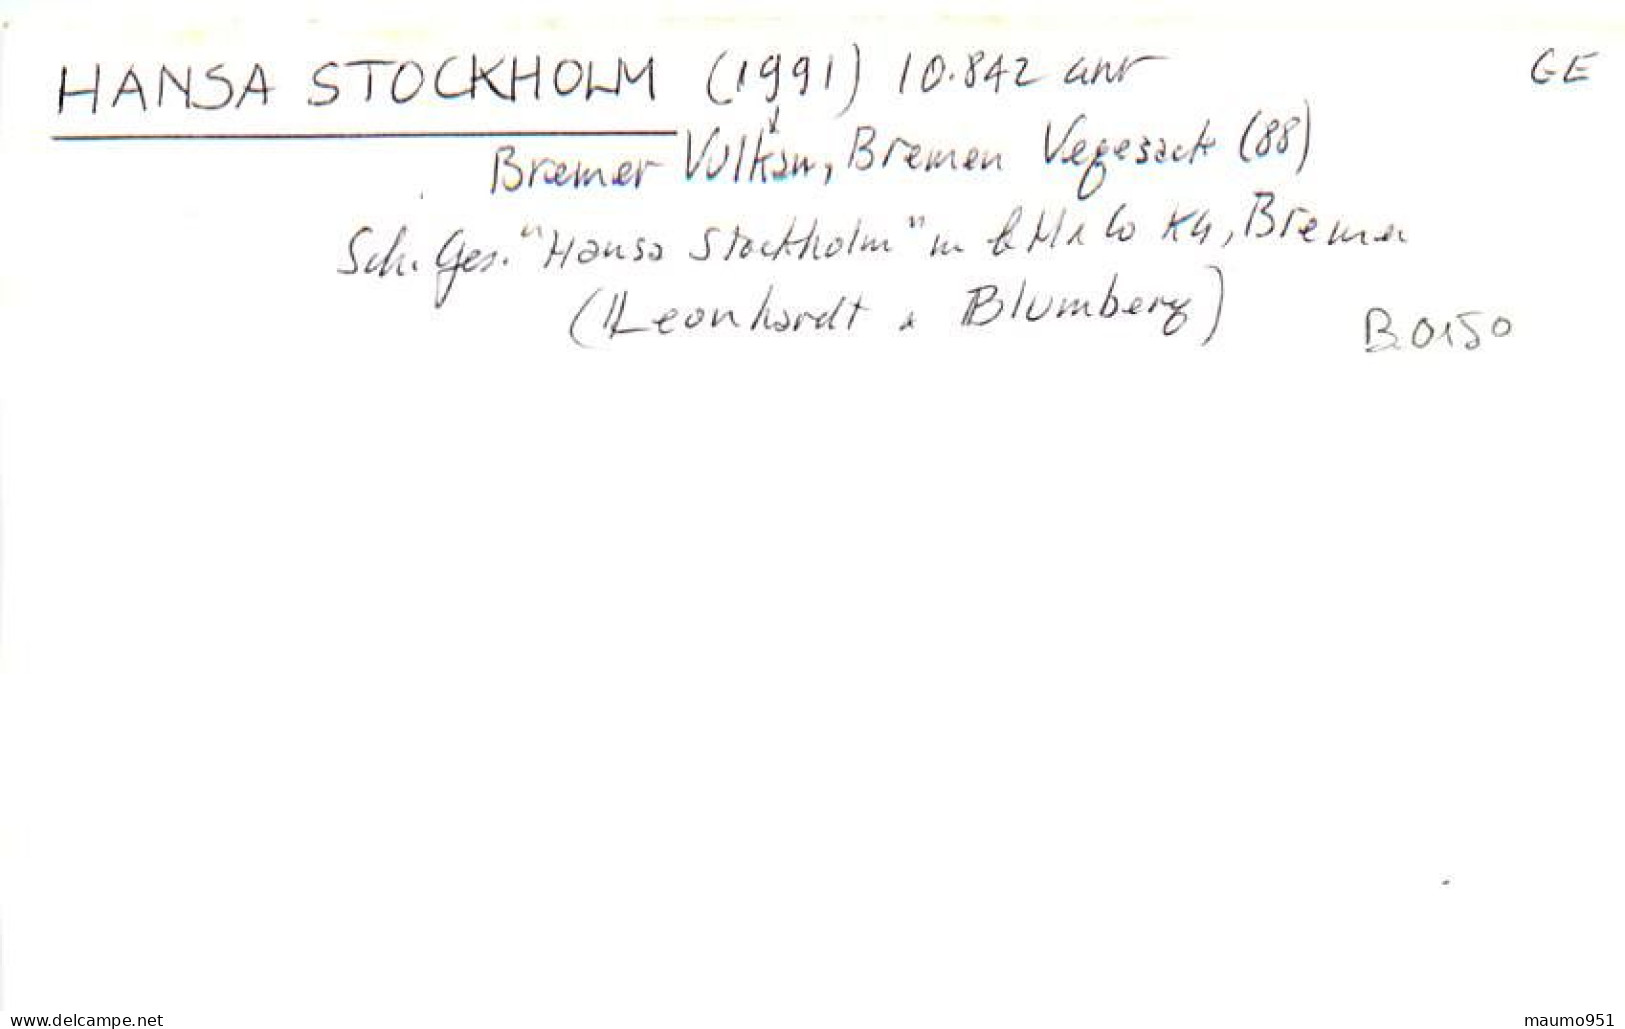 150 CLICHE BATEAU COMMERCE - LE HANSA STOCKHOLM 1991 - CATEGORIE 10842TONNES - FORMAT CPA N° B 0150 - Barcos